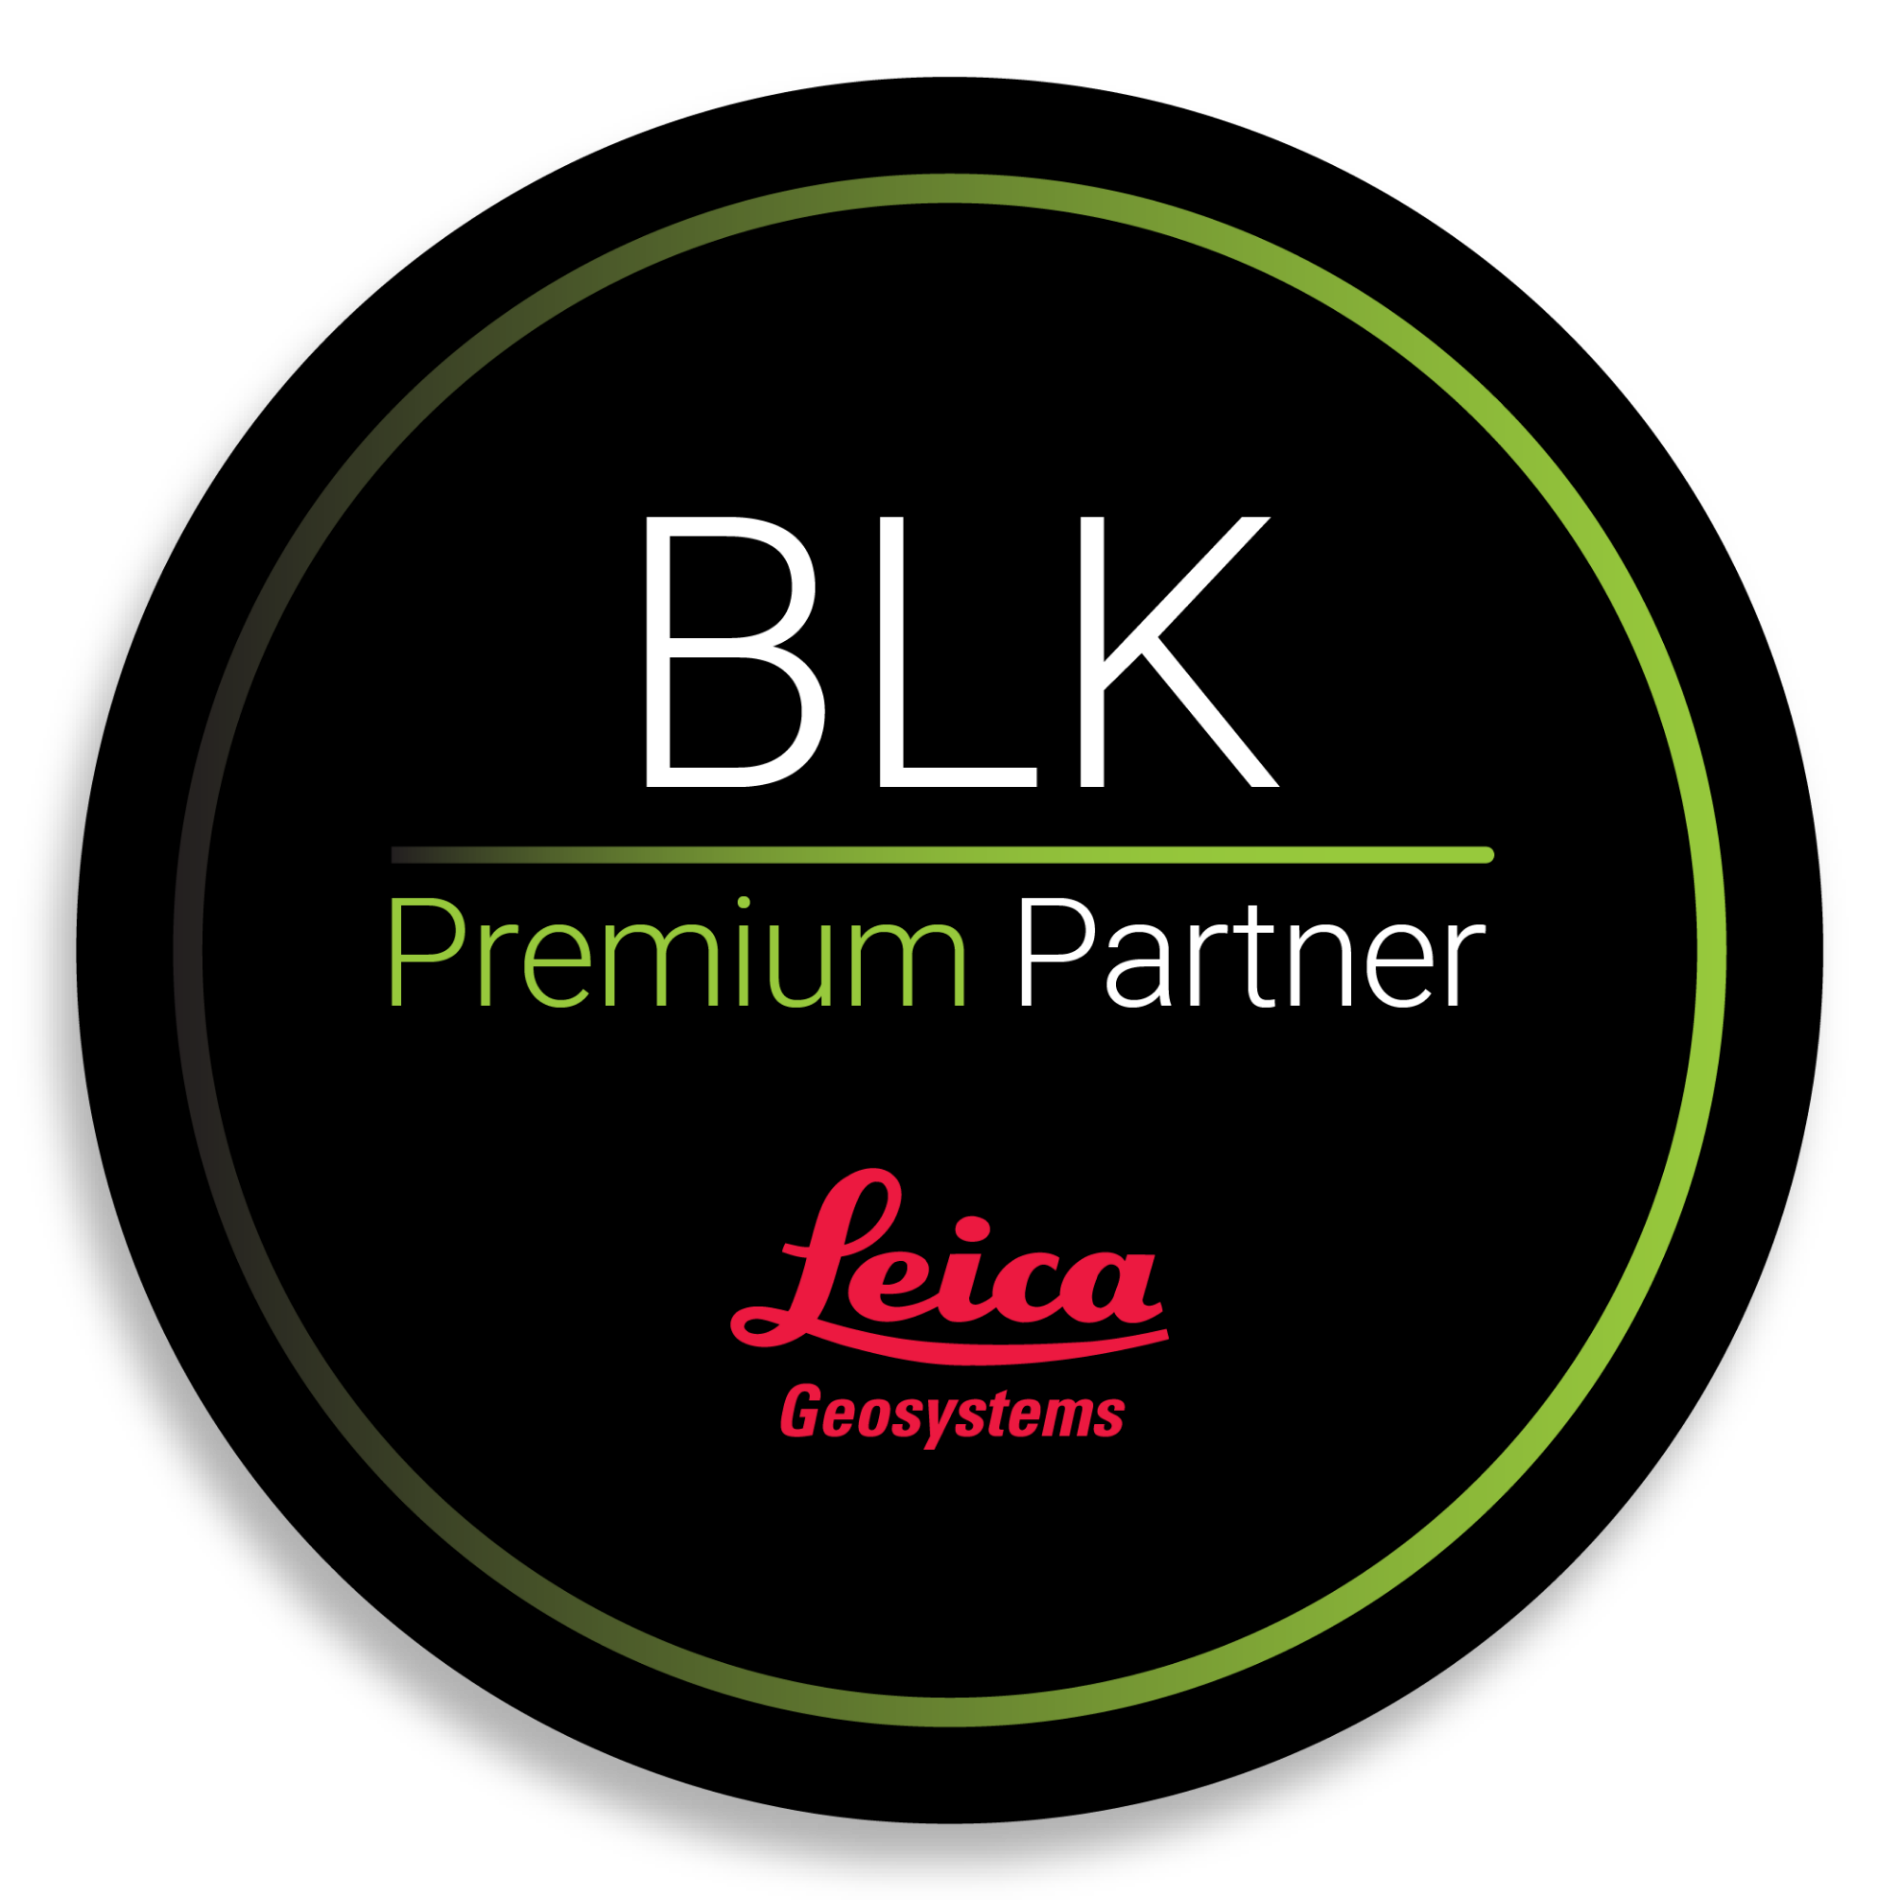 BLK Premium Partner